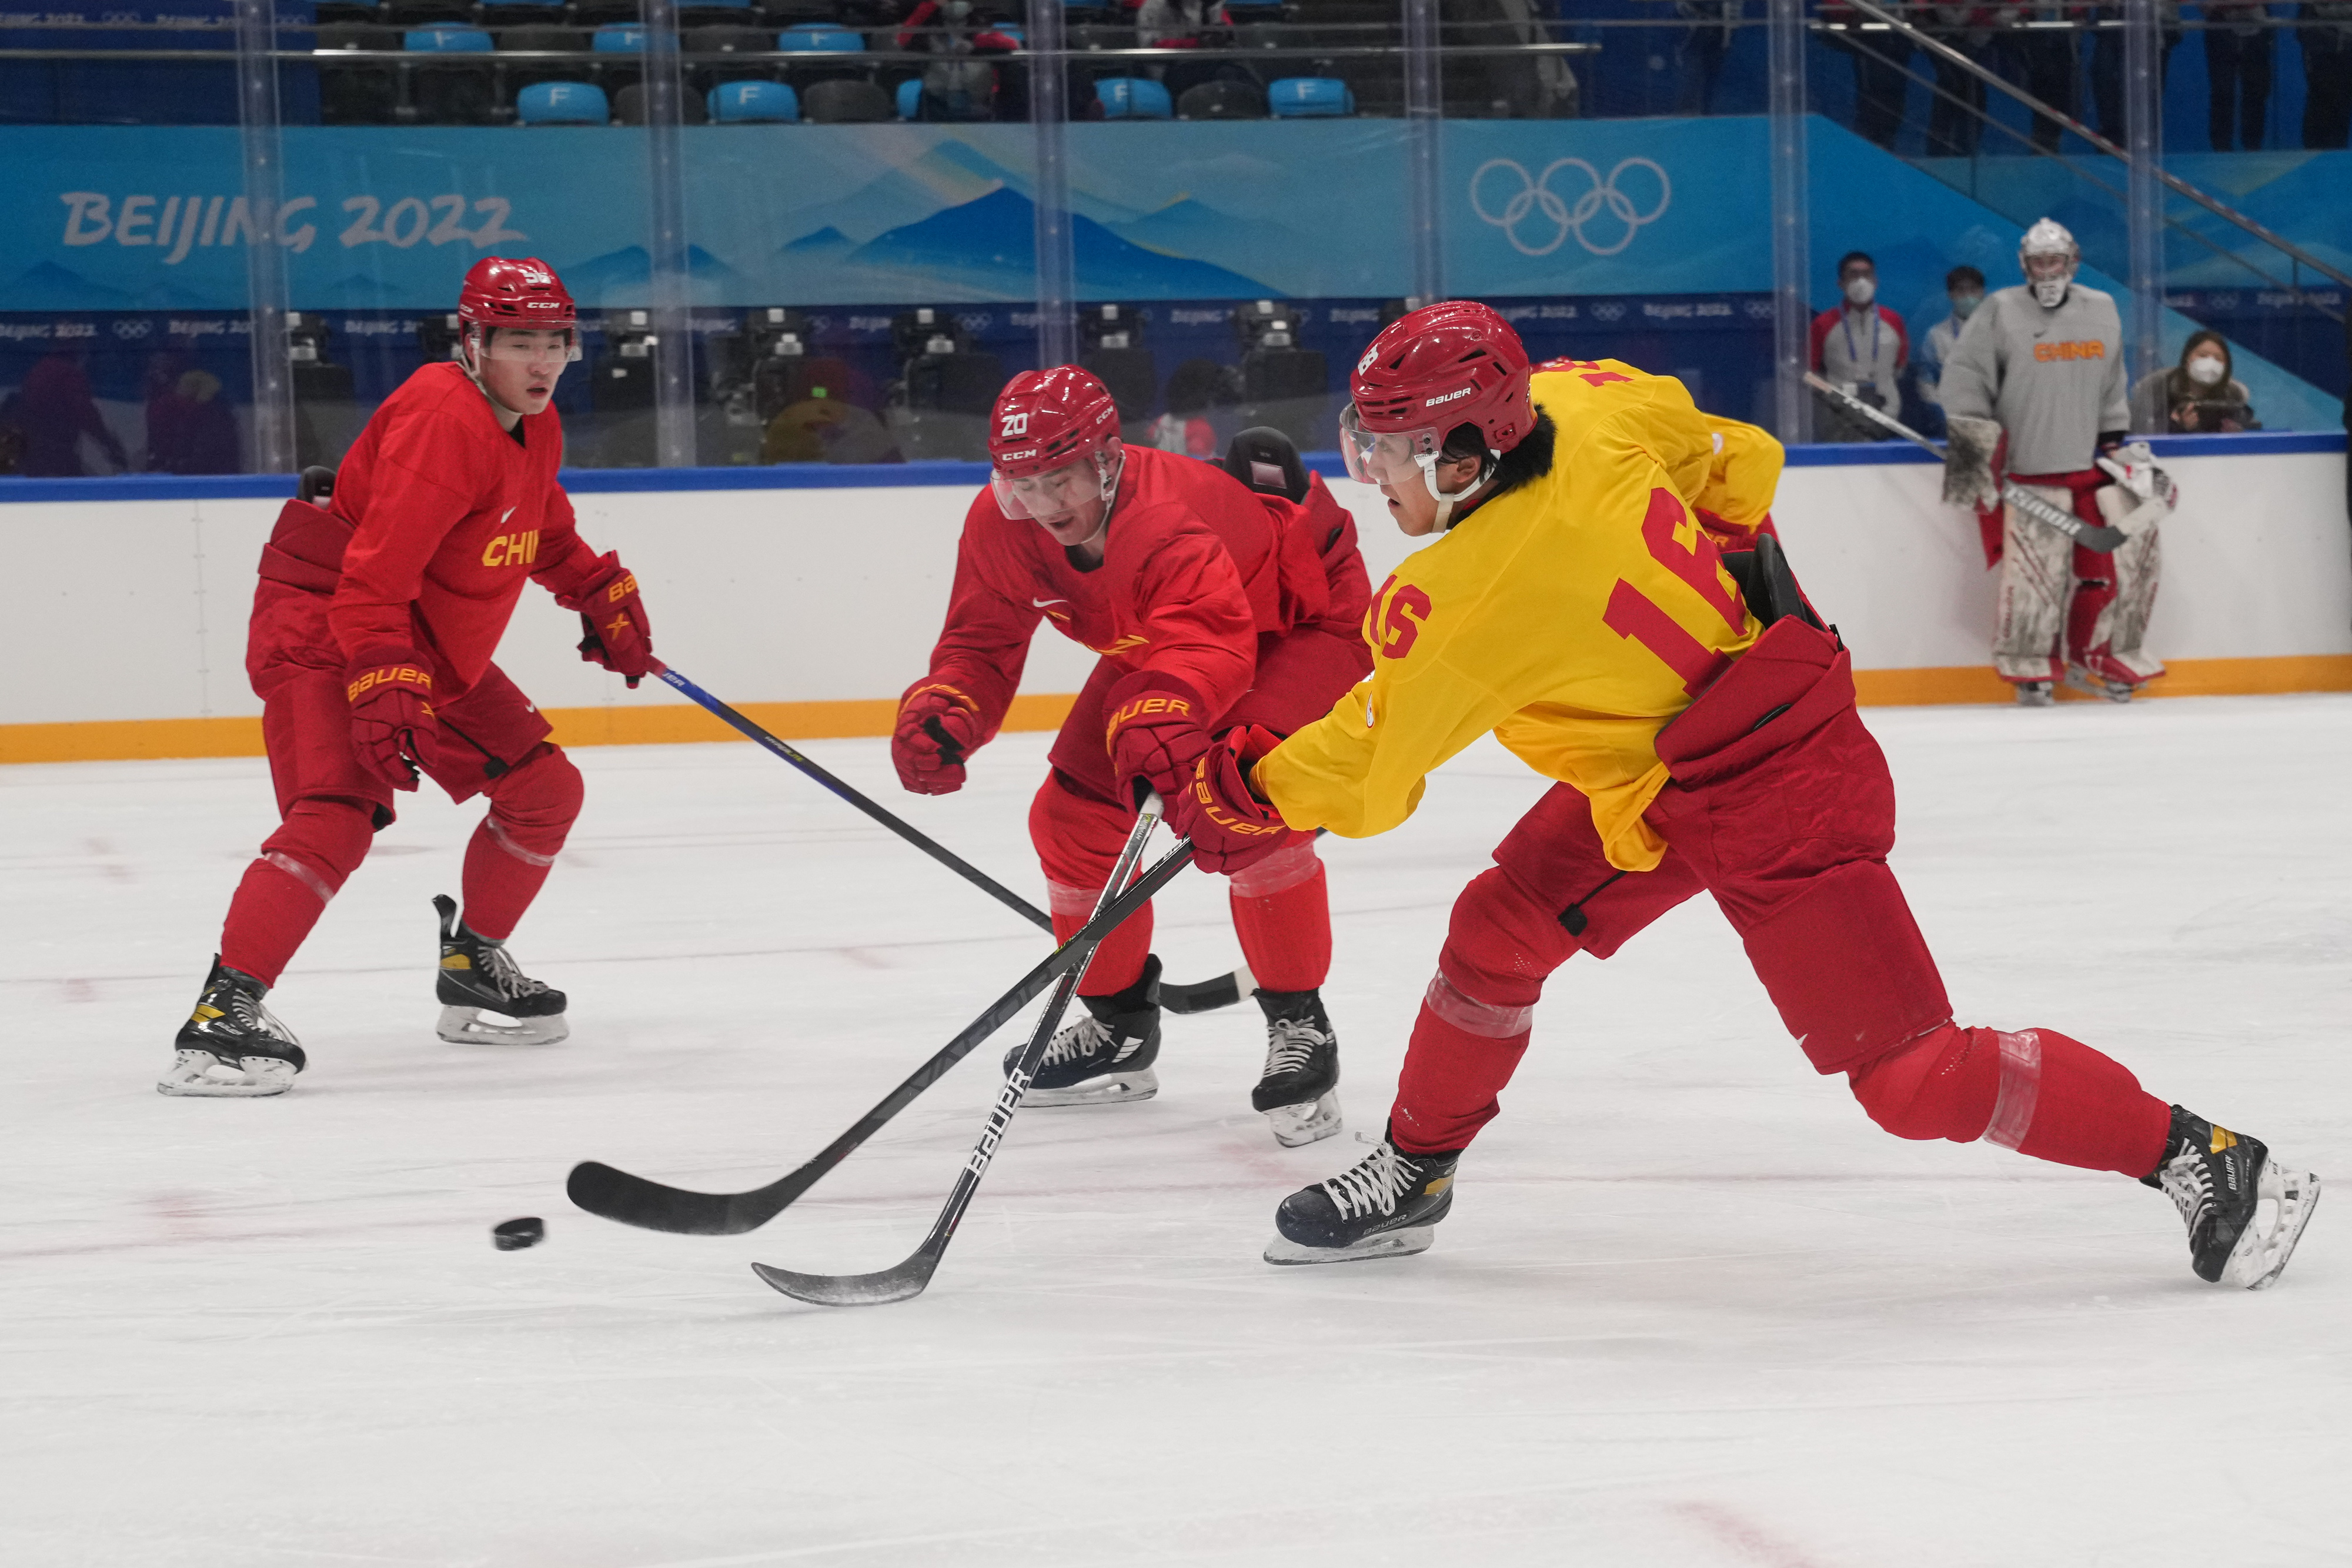 北京冬奥会·冰球|前瞻:欧美劲旅逐梦北京 中国冰球挑战自我